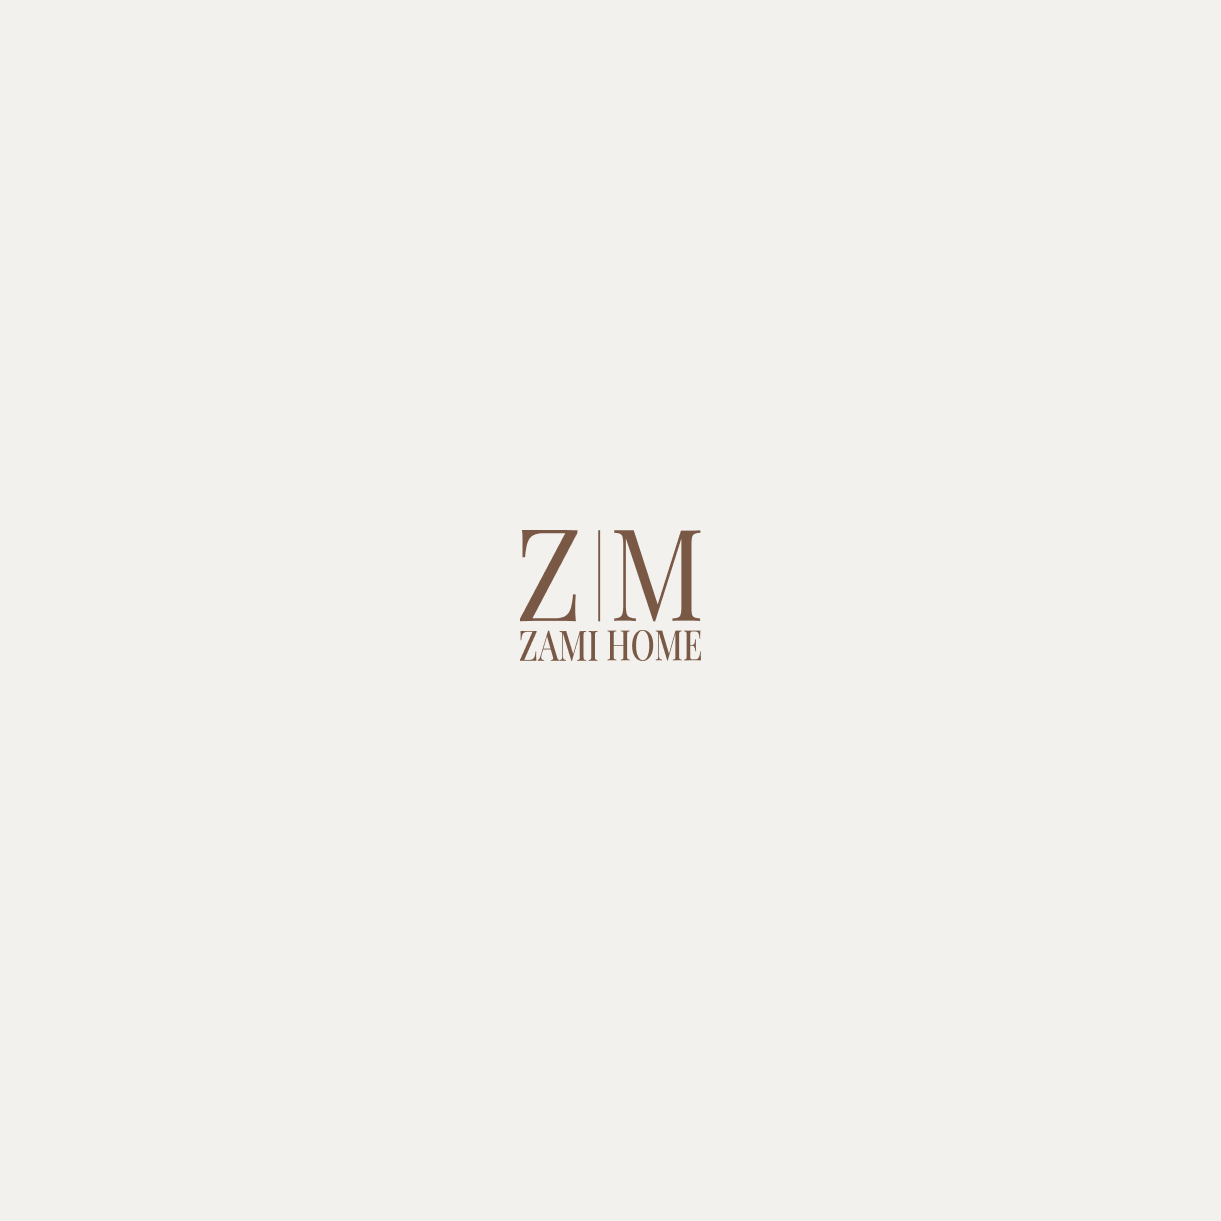 ZAMI HOME — Изображение №3 — Брендинг, Графика на Dprofile